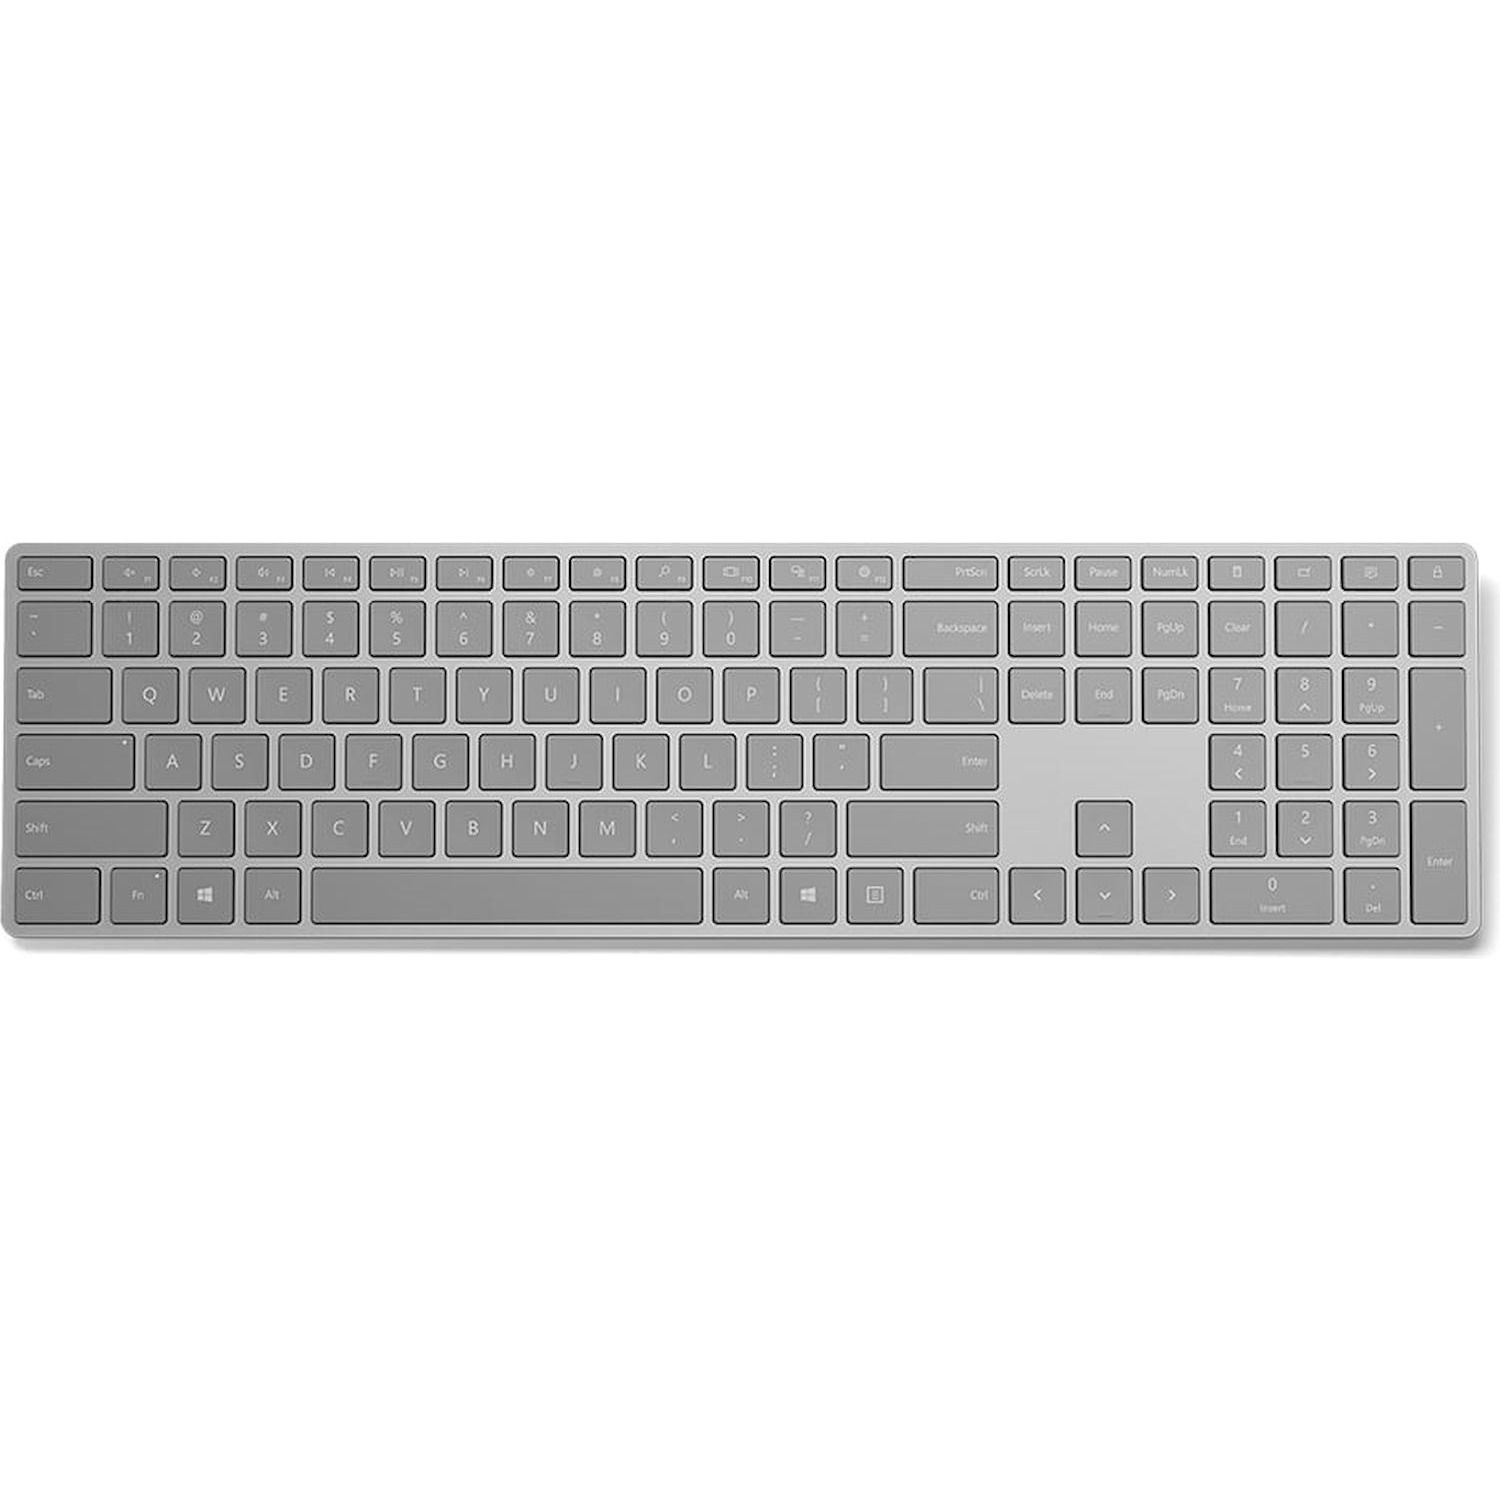 Immagine per Ccover con tastiera per Surface Pro 4 grigio da DIMOStore